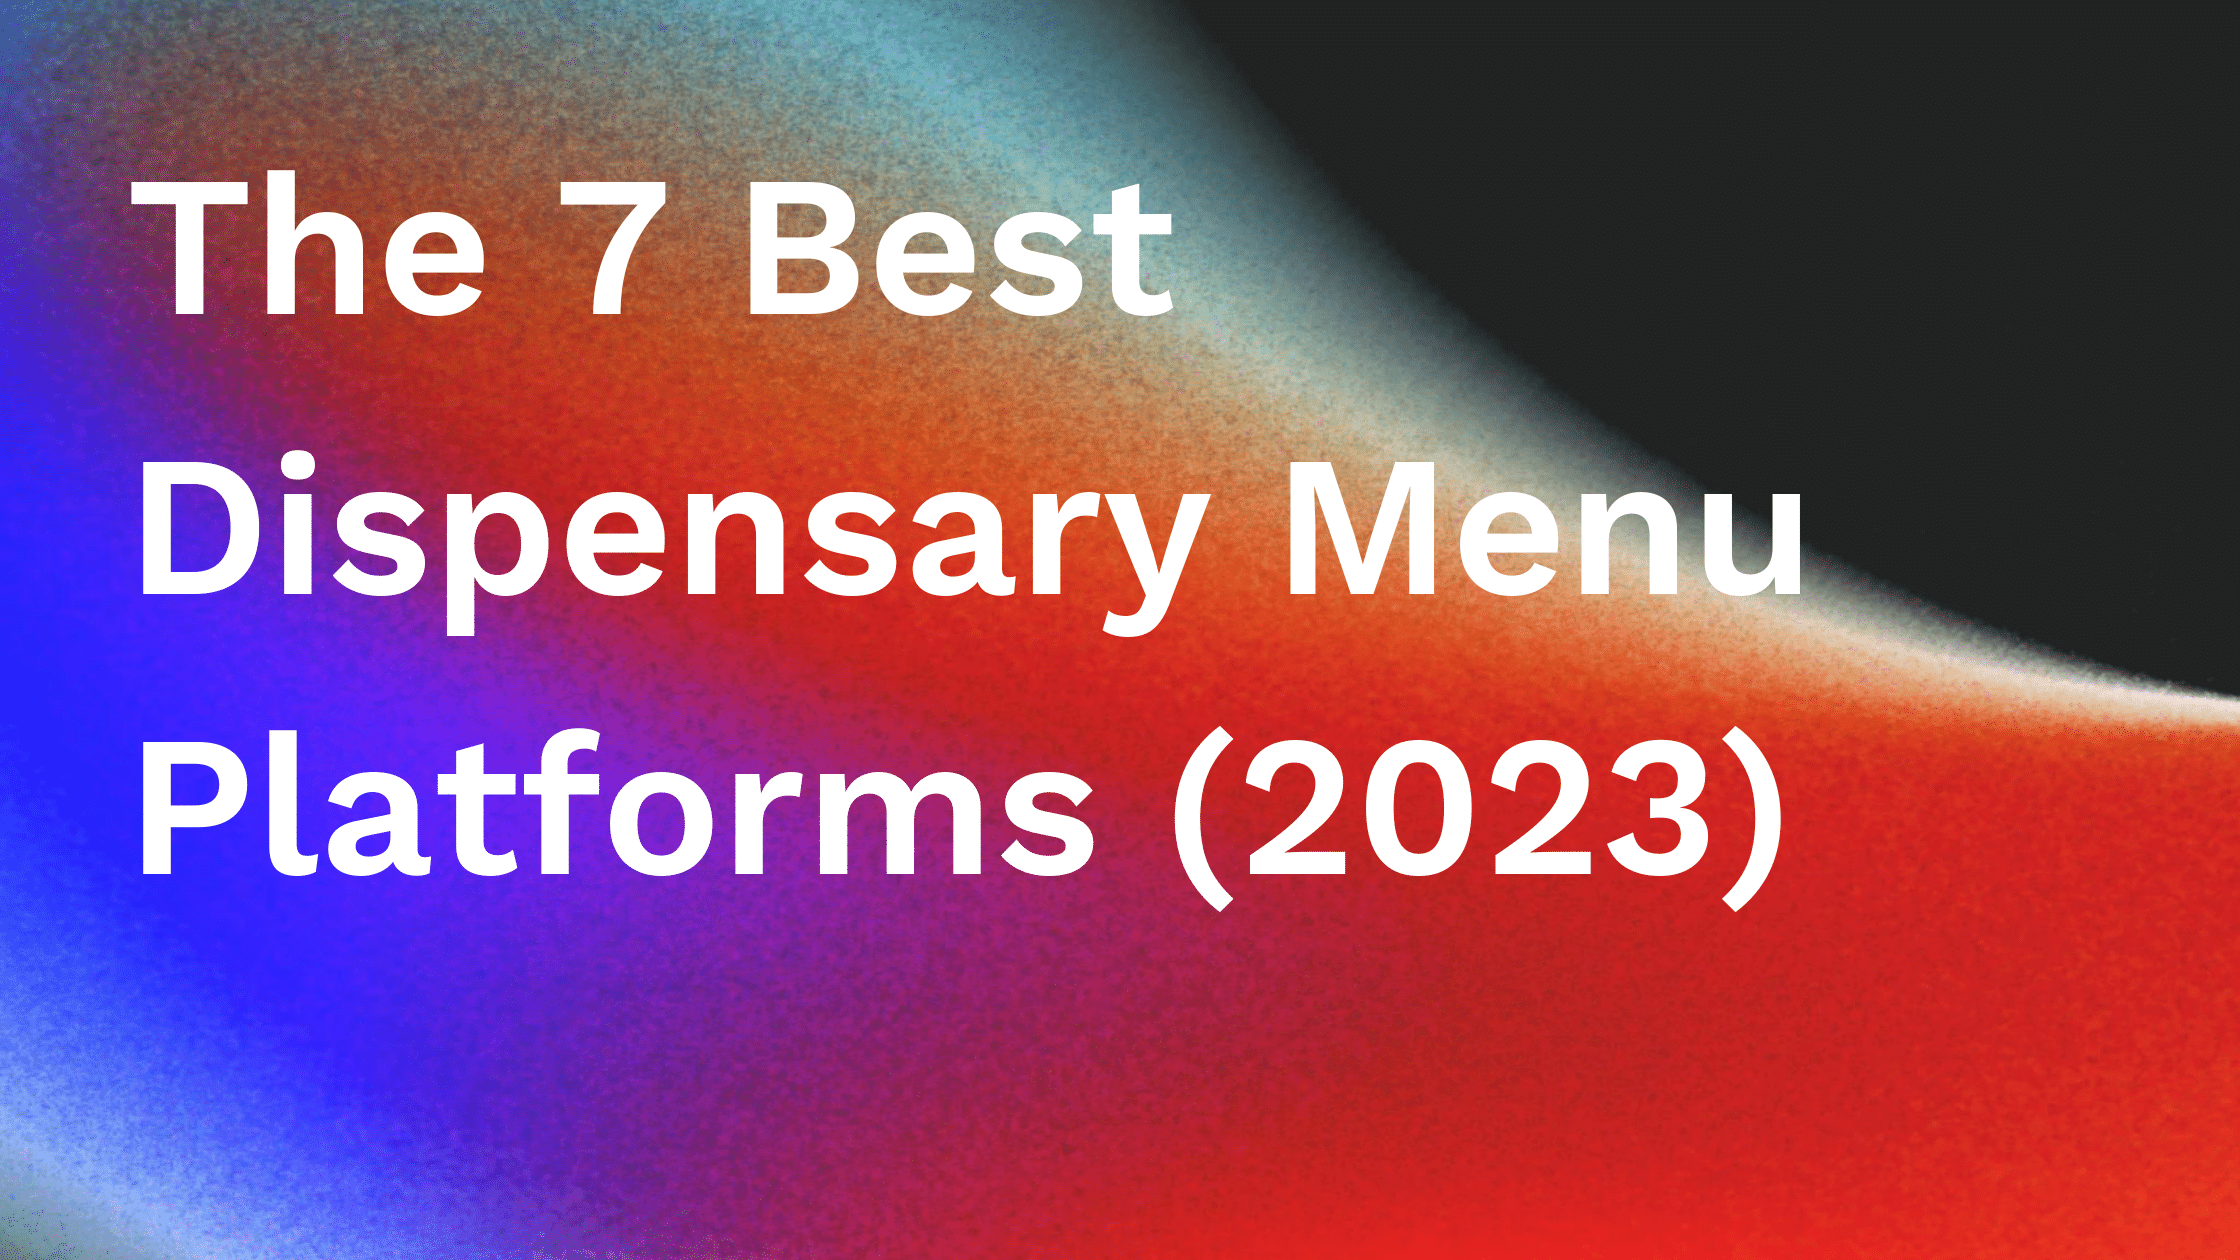 The 7 Best Dispensary Menu Platforms (2023)